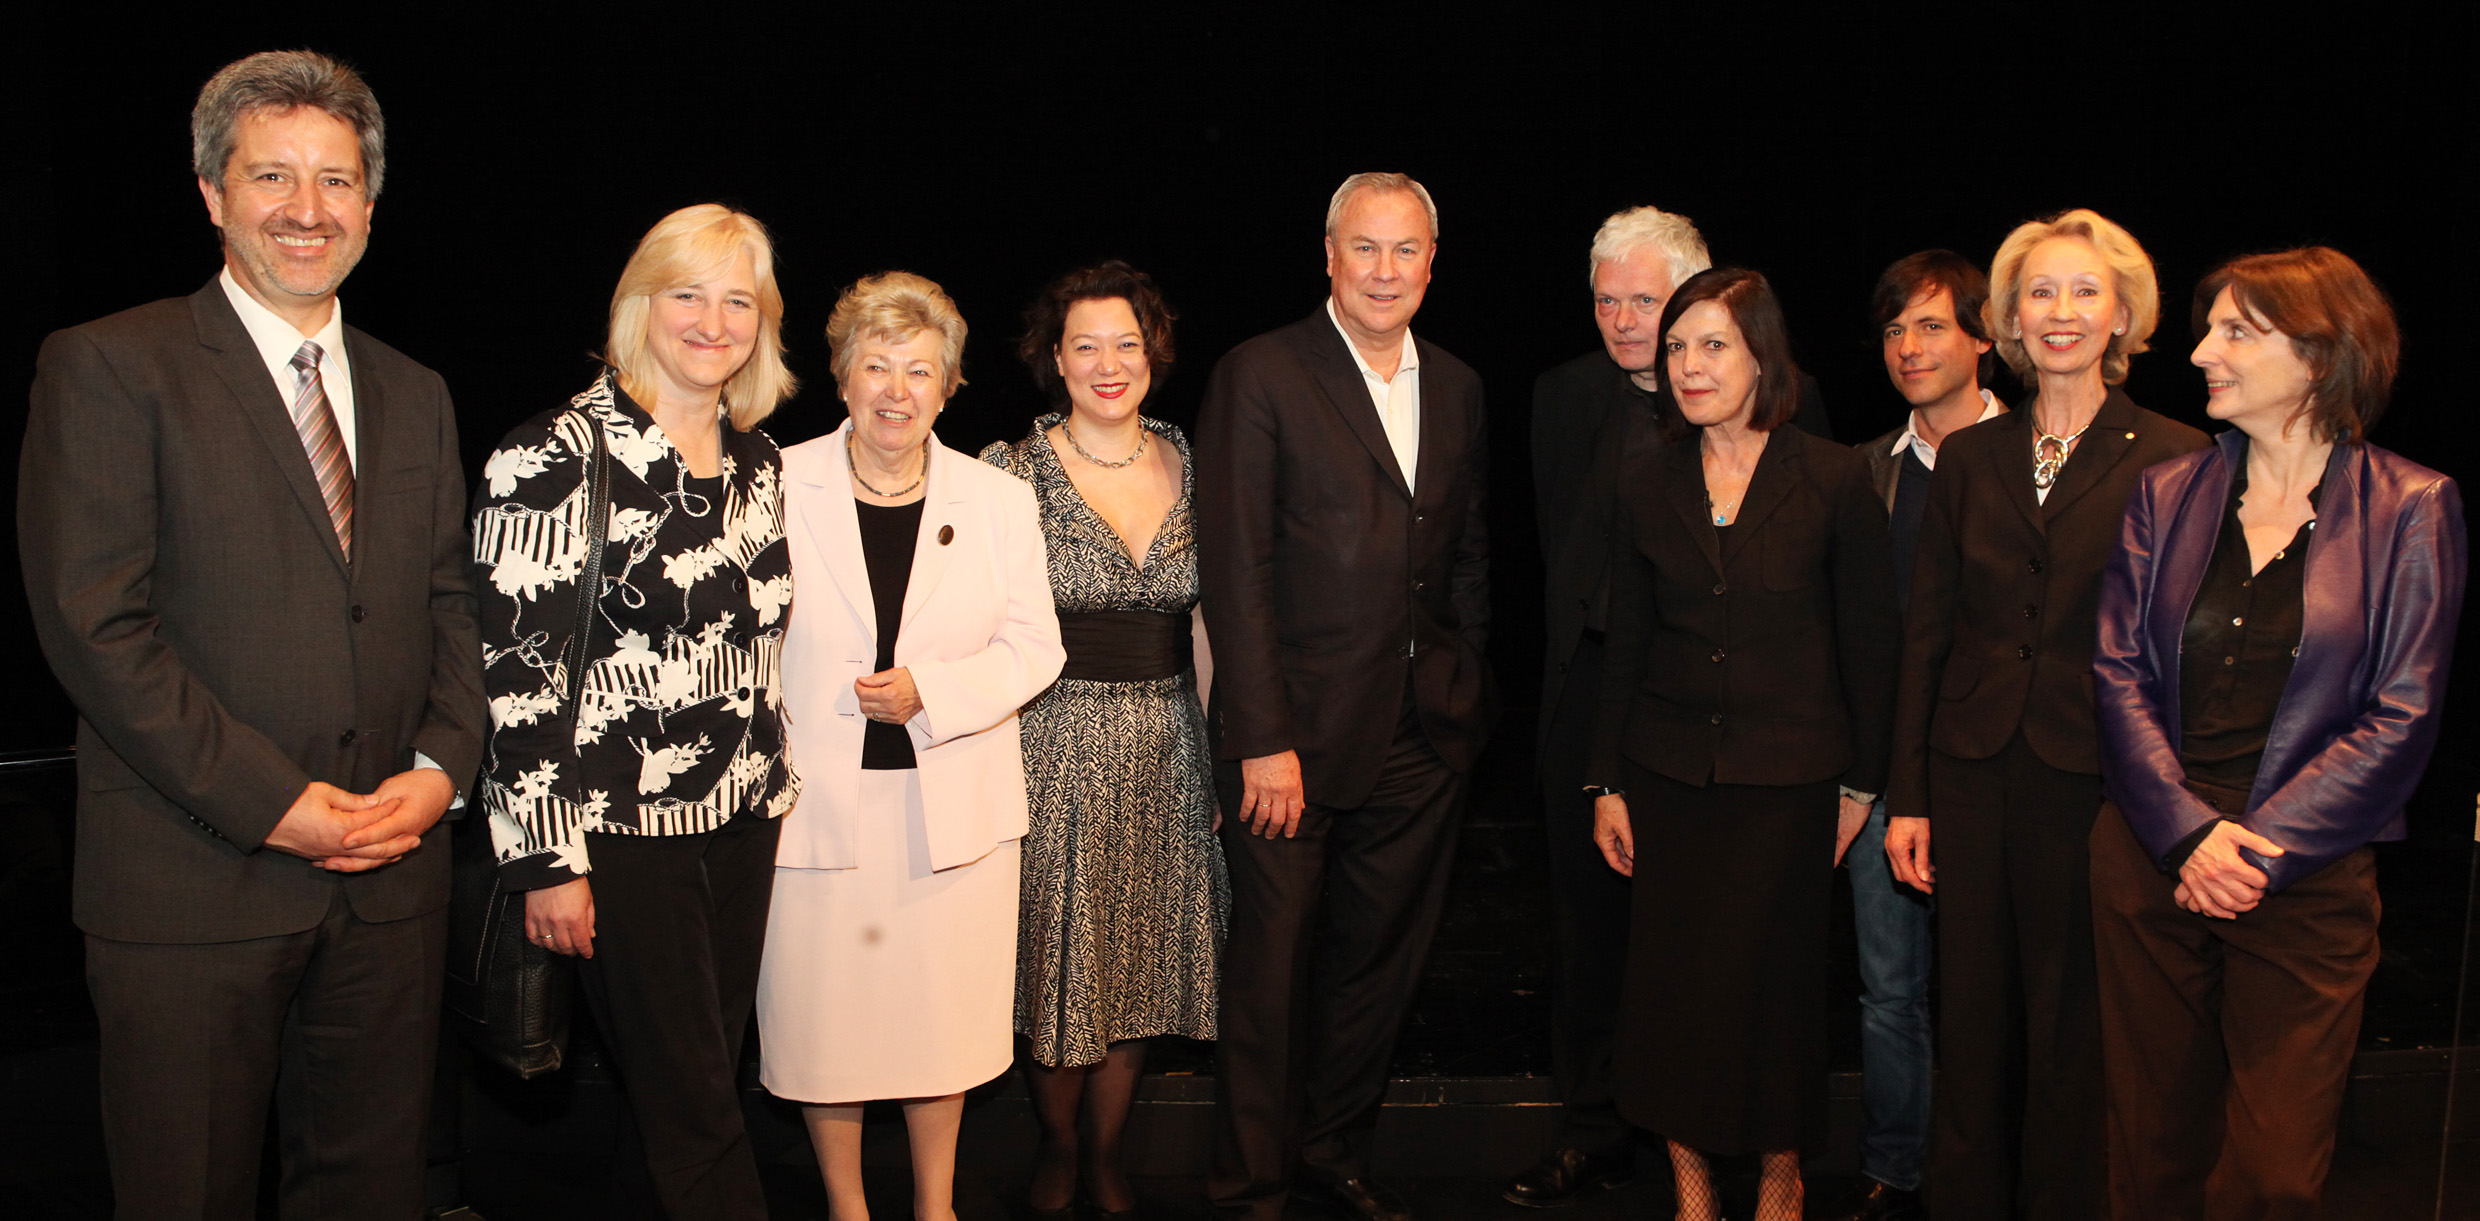 Gruppenbild von der Preisverleihung 2009